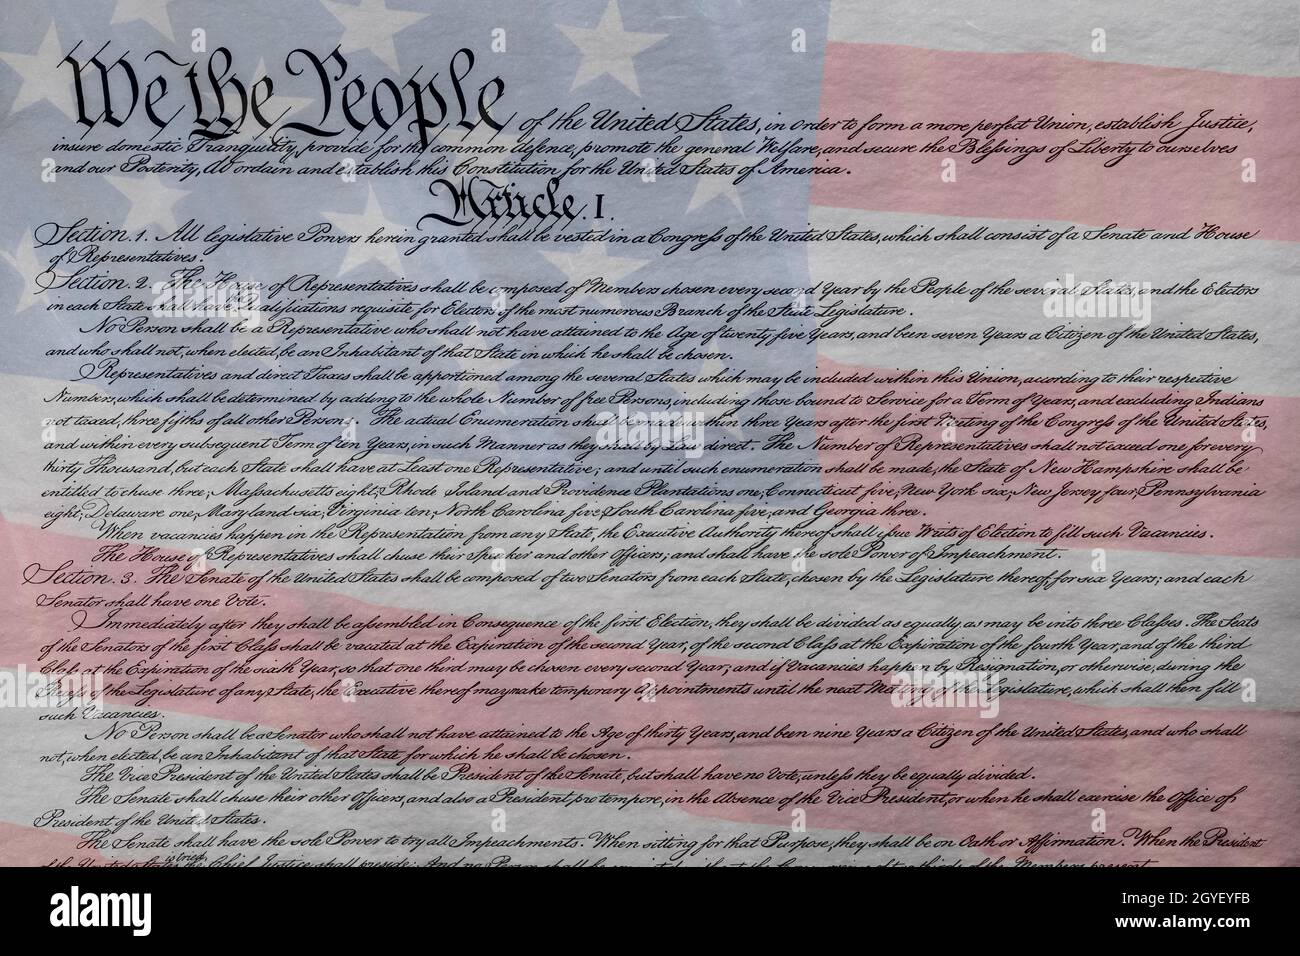 Die amerikanische Flagge wurde mit der Verfassung der Vereinigten Staaten verschmolzen, um als Symbol für Gesetze, Freiheit und Trennung von Regierungsbefugnissen zu gelten. Stockfoto